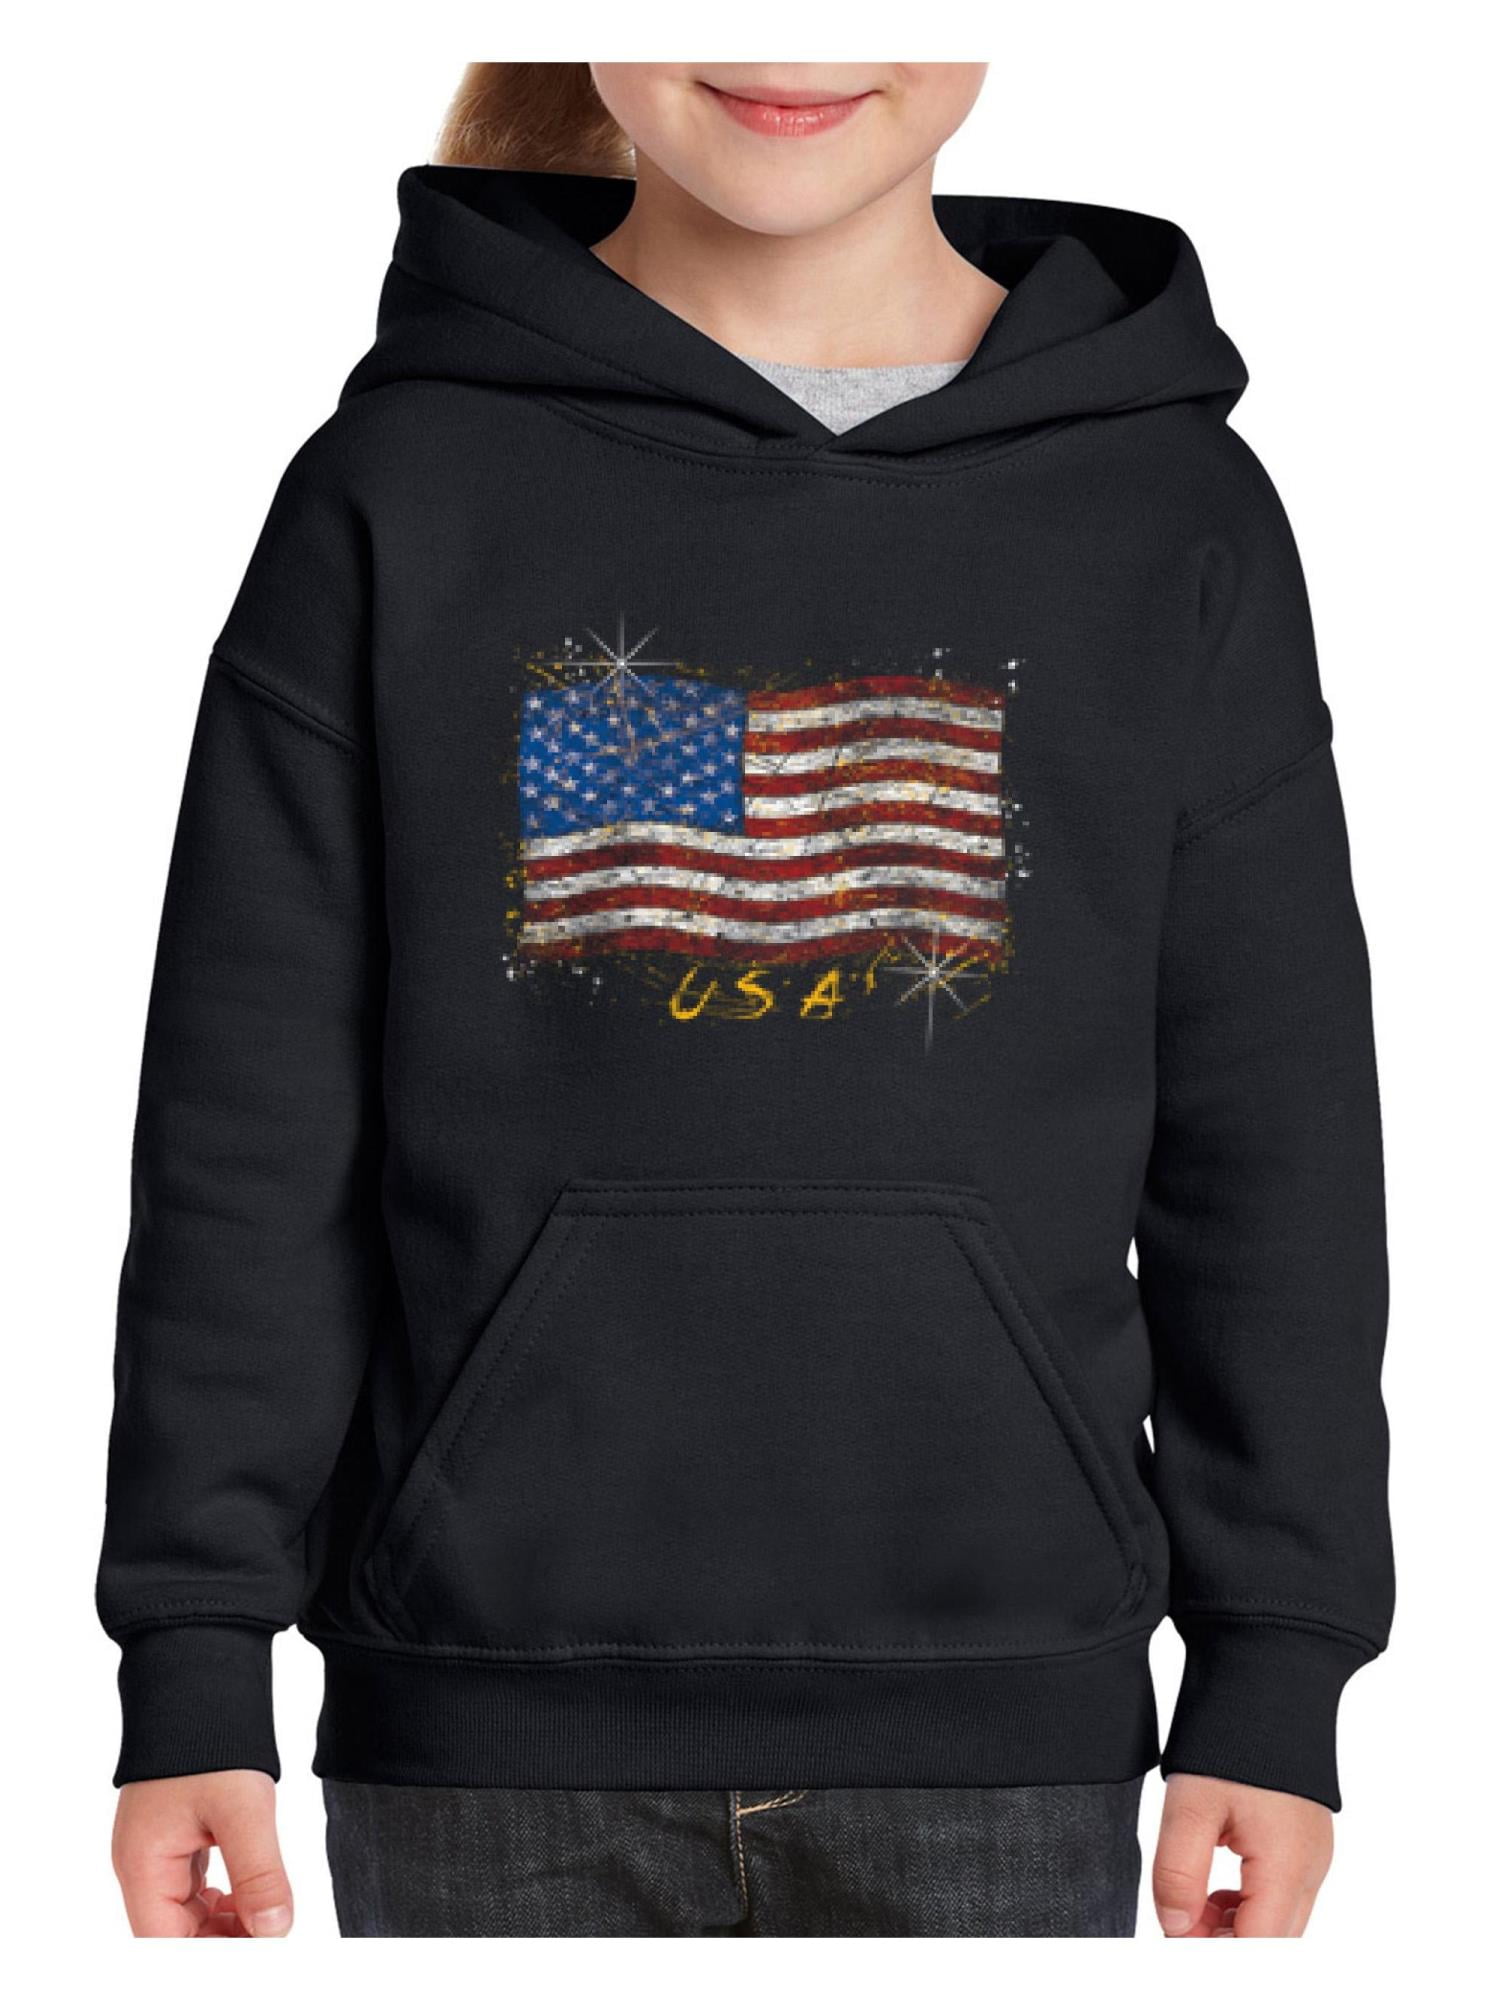 Personalised Custom Print unisex Kids Pullover Hoodie Children Sweatshirt jumper 